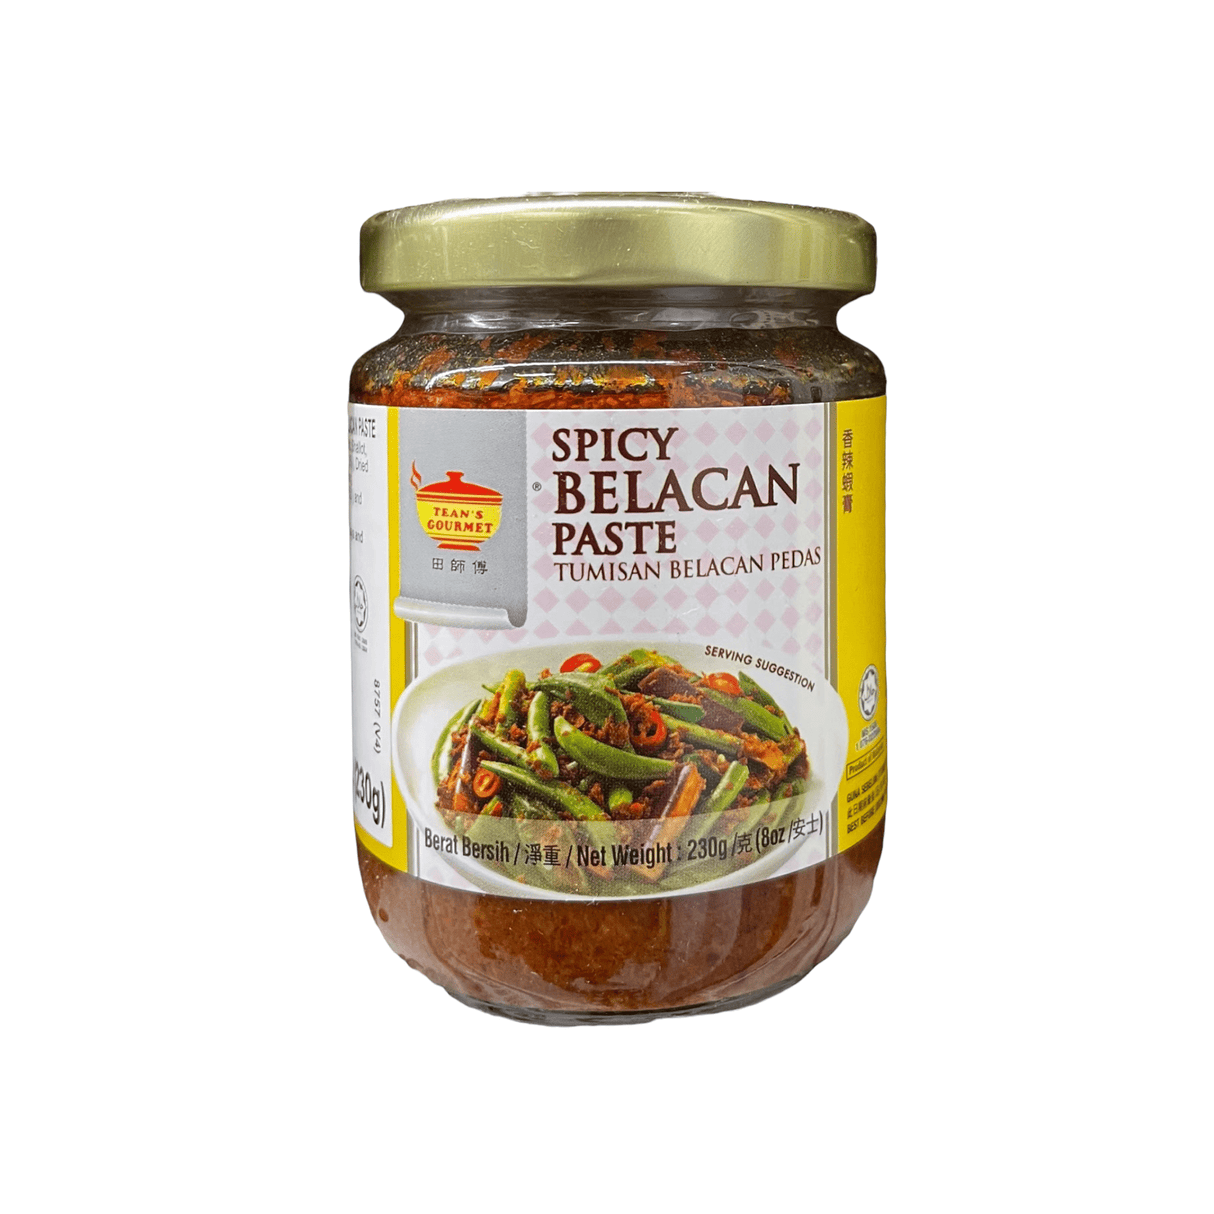 Tean's Gourmet Spicy Belacan Paste